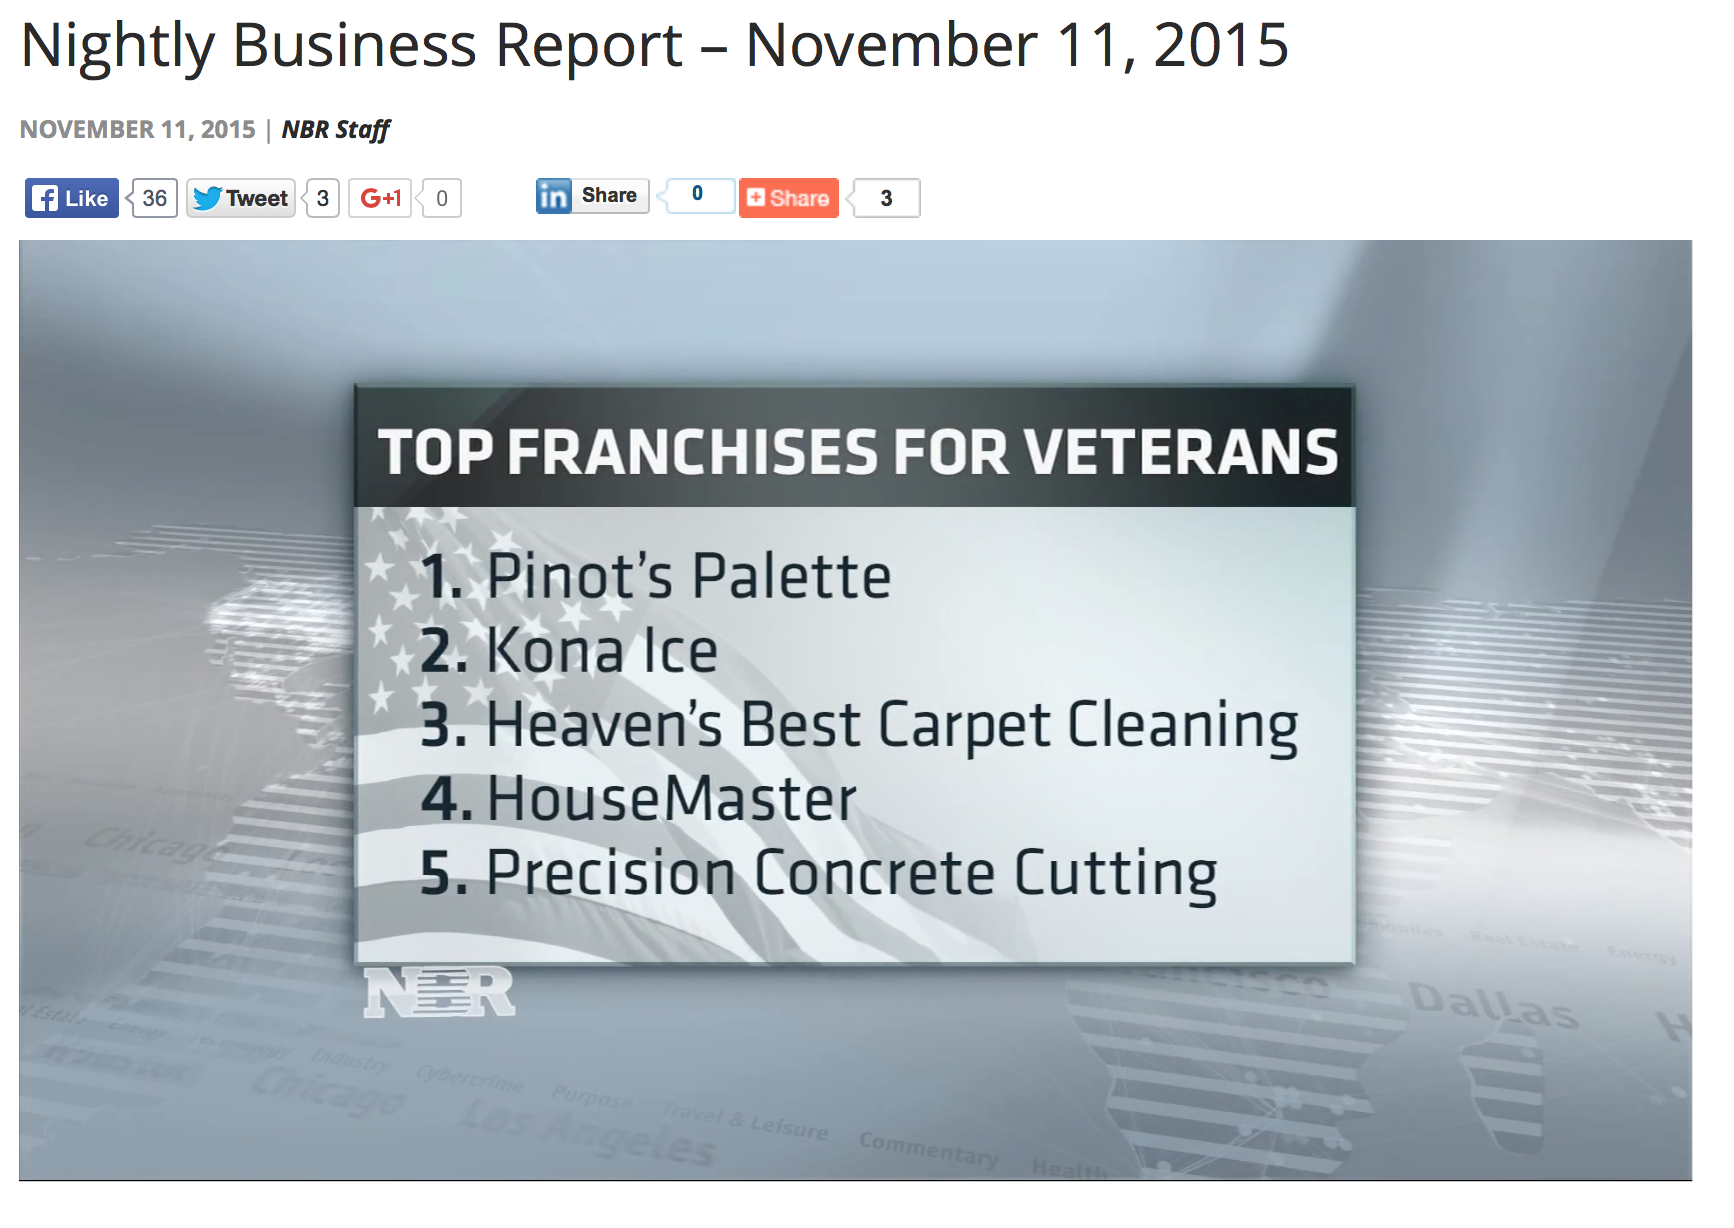 Pinot's Palette Named Top Franchise for Veterans